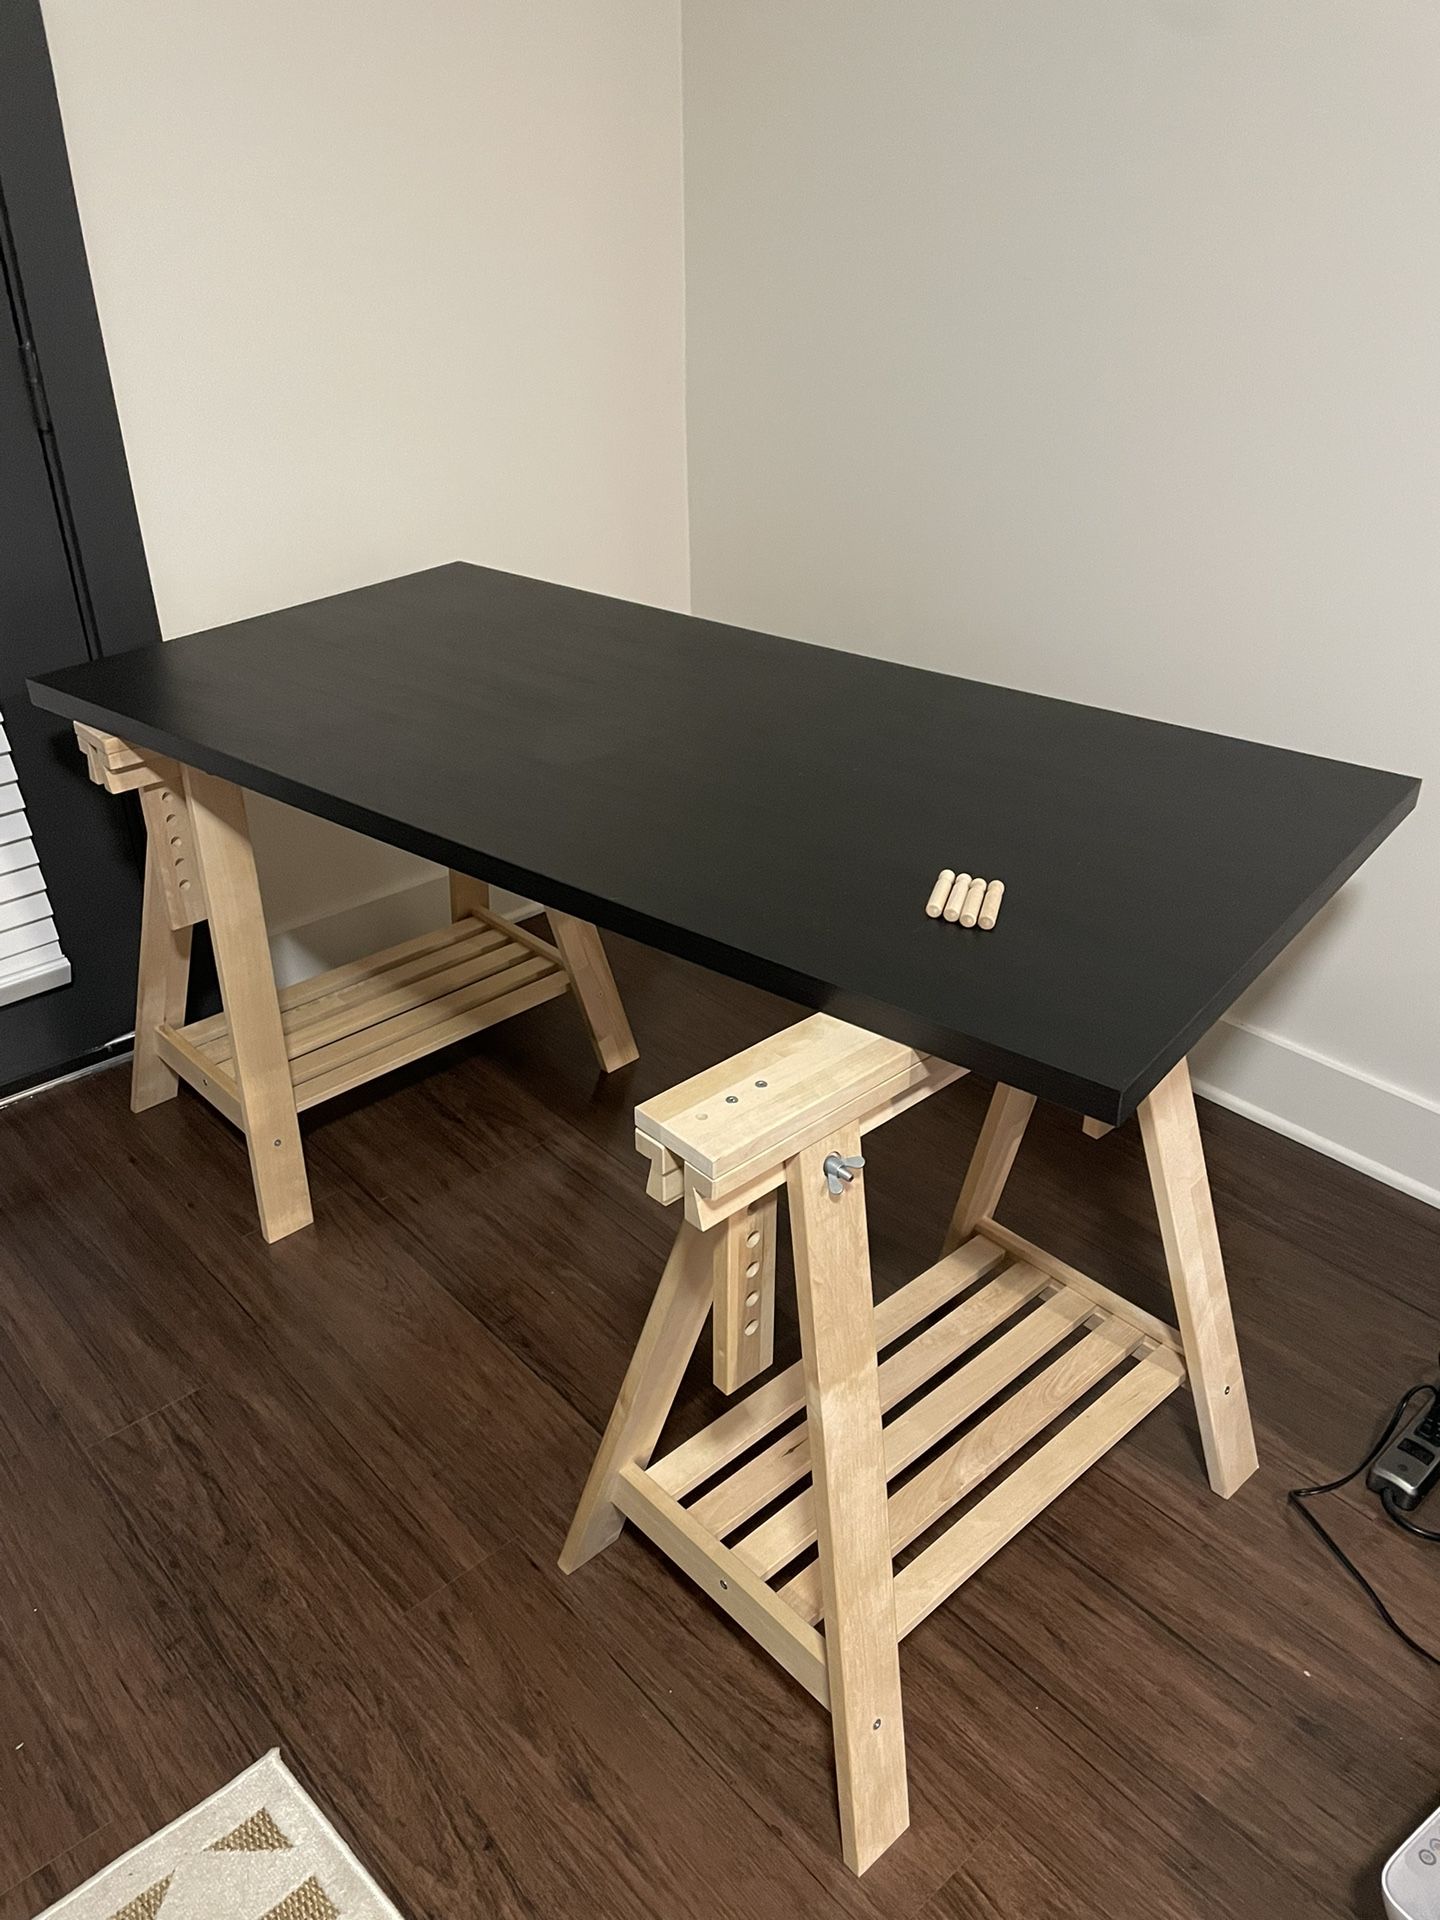 IKEA Tabletop and Adjustable Trestle Legs